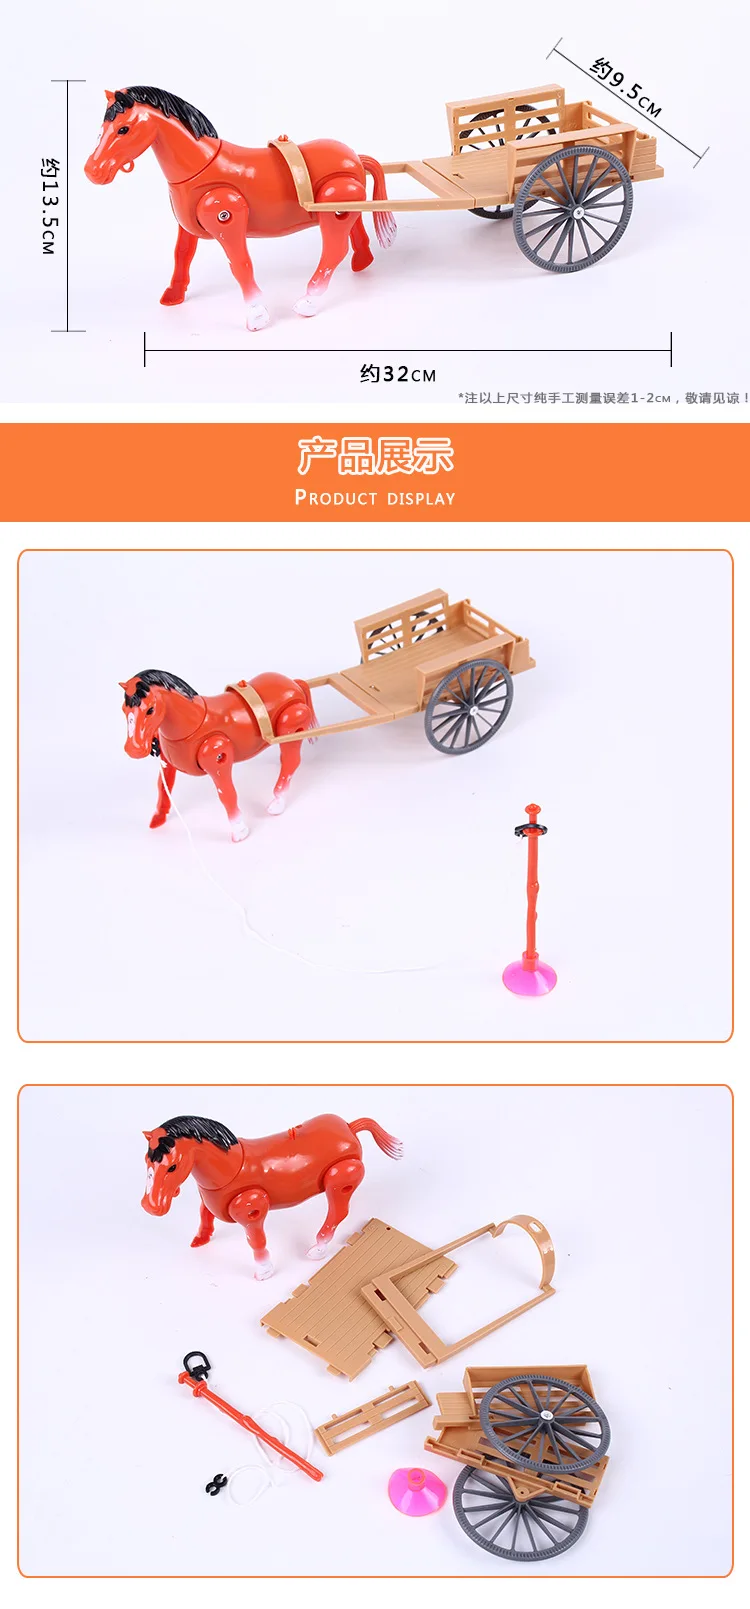 Робот лошадь электронные игрушки Pet игрушечная лошадь Run Walk тянуть каретки вокруг для детей подарки на день рождения